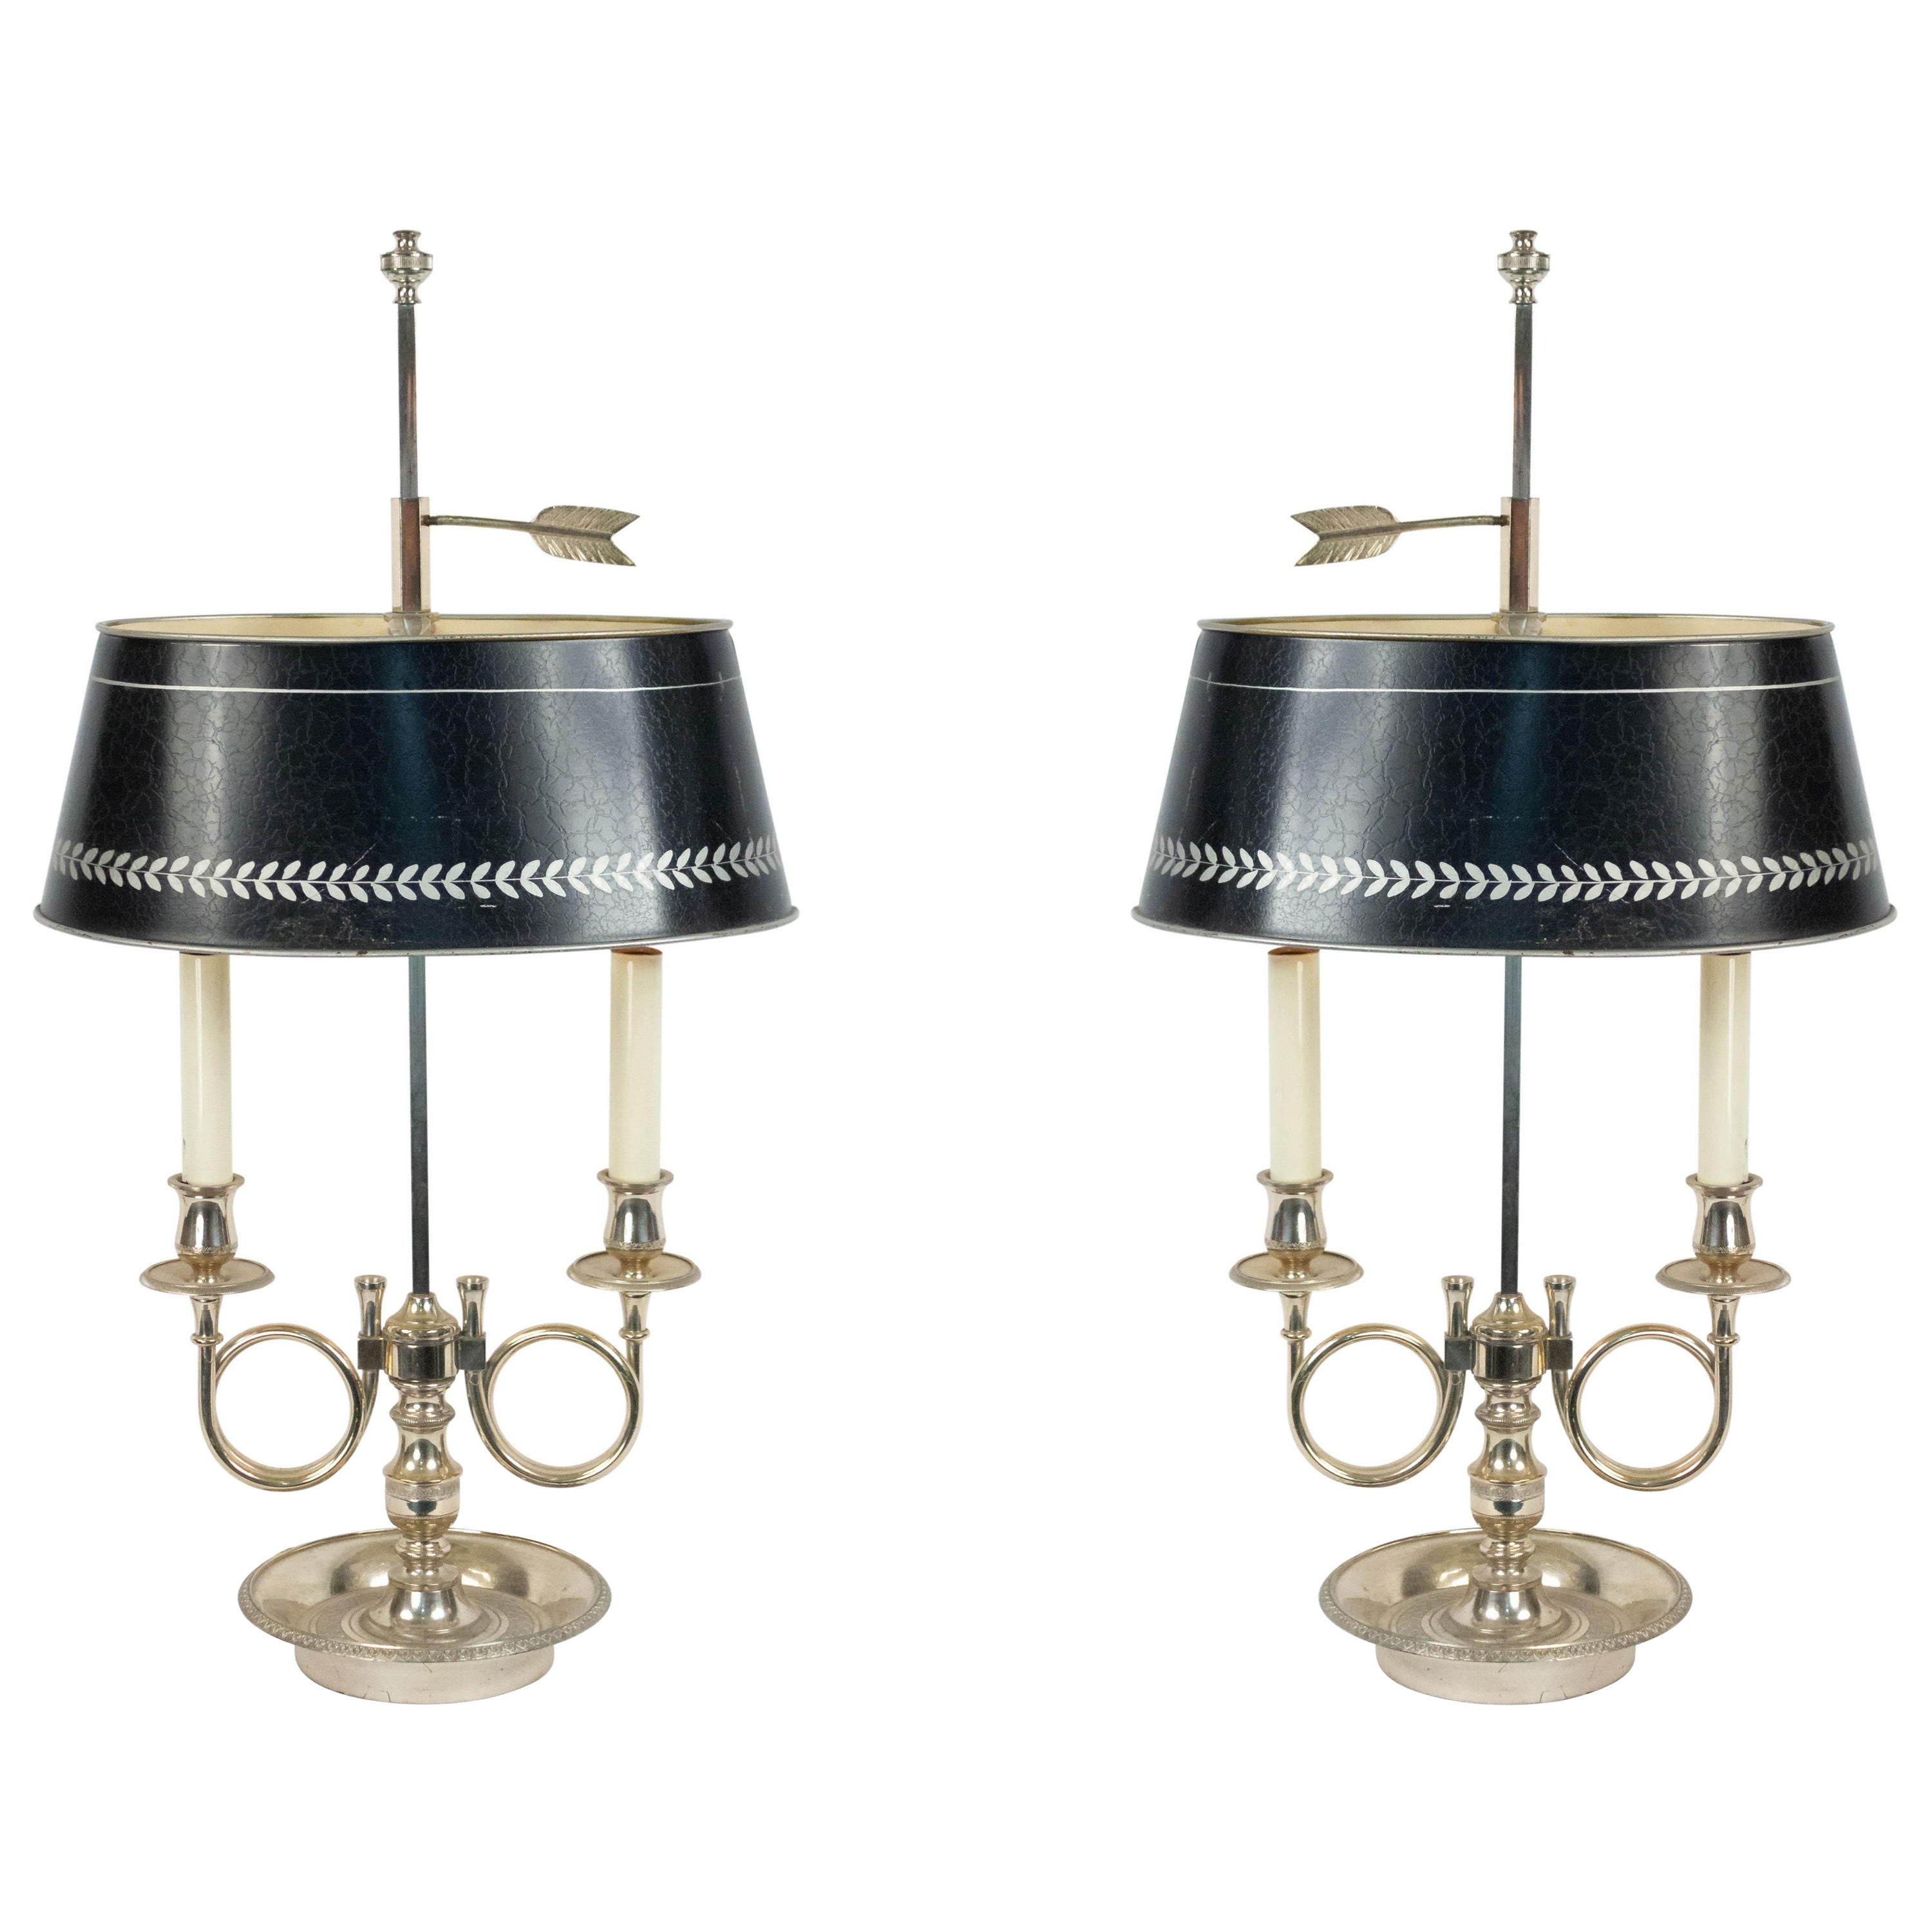 Paire de lampes de table de style Empire français en métal argenté